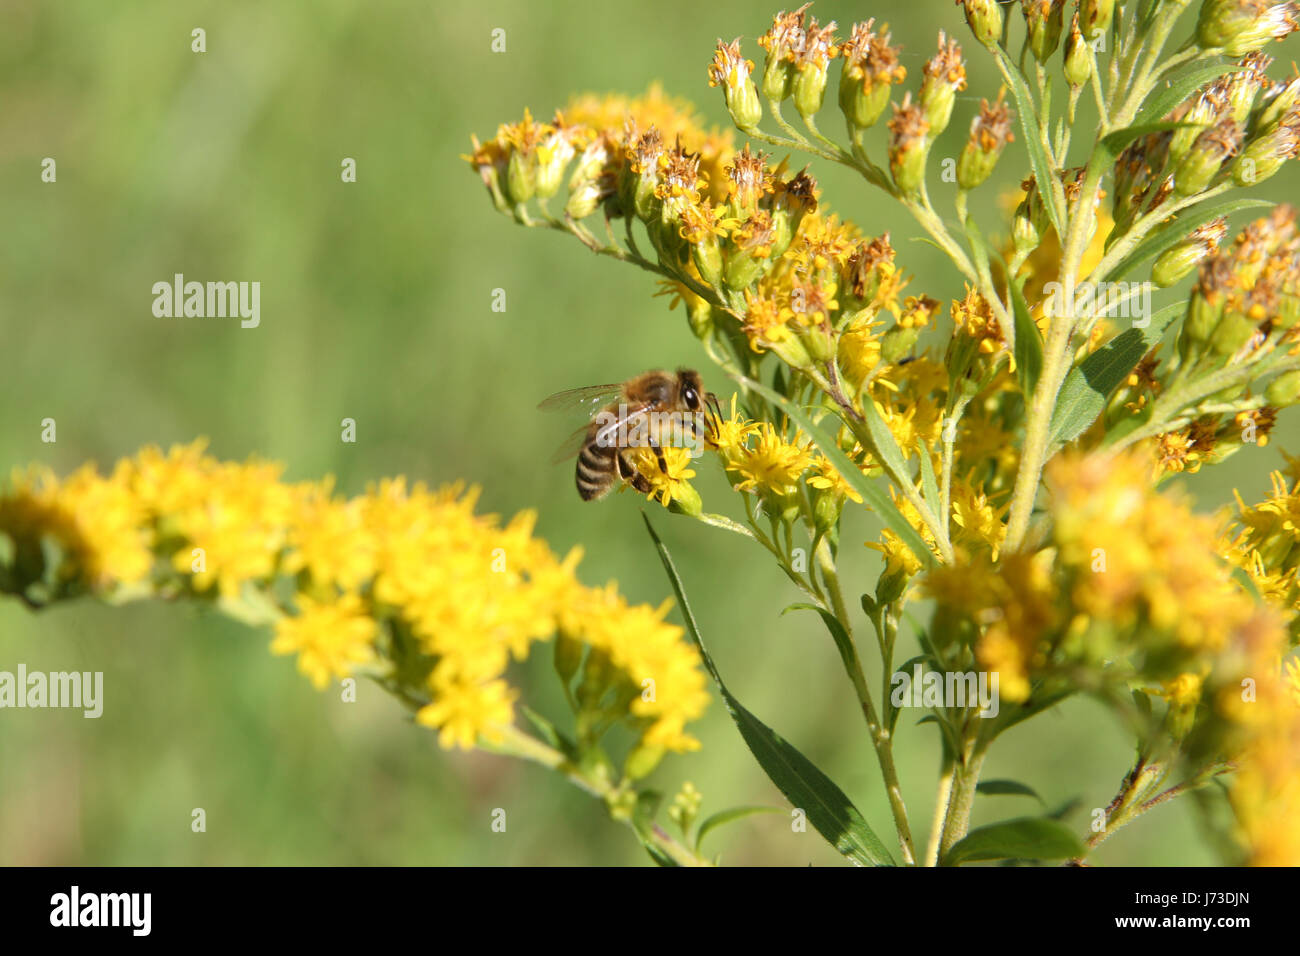 Animaux faune flore insectes mouches abeille jardin botanique quartet mouches flower Banque D'Images